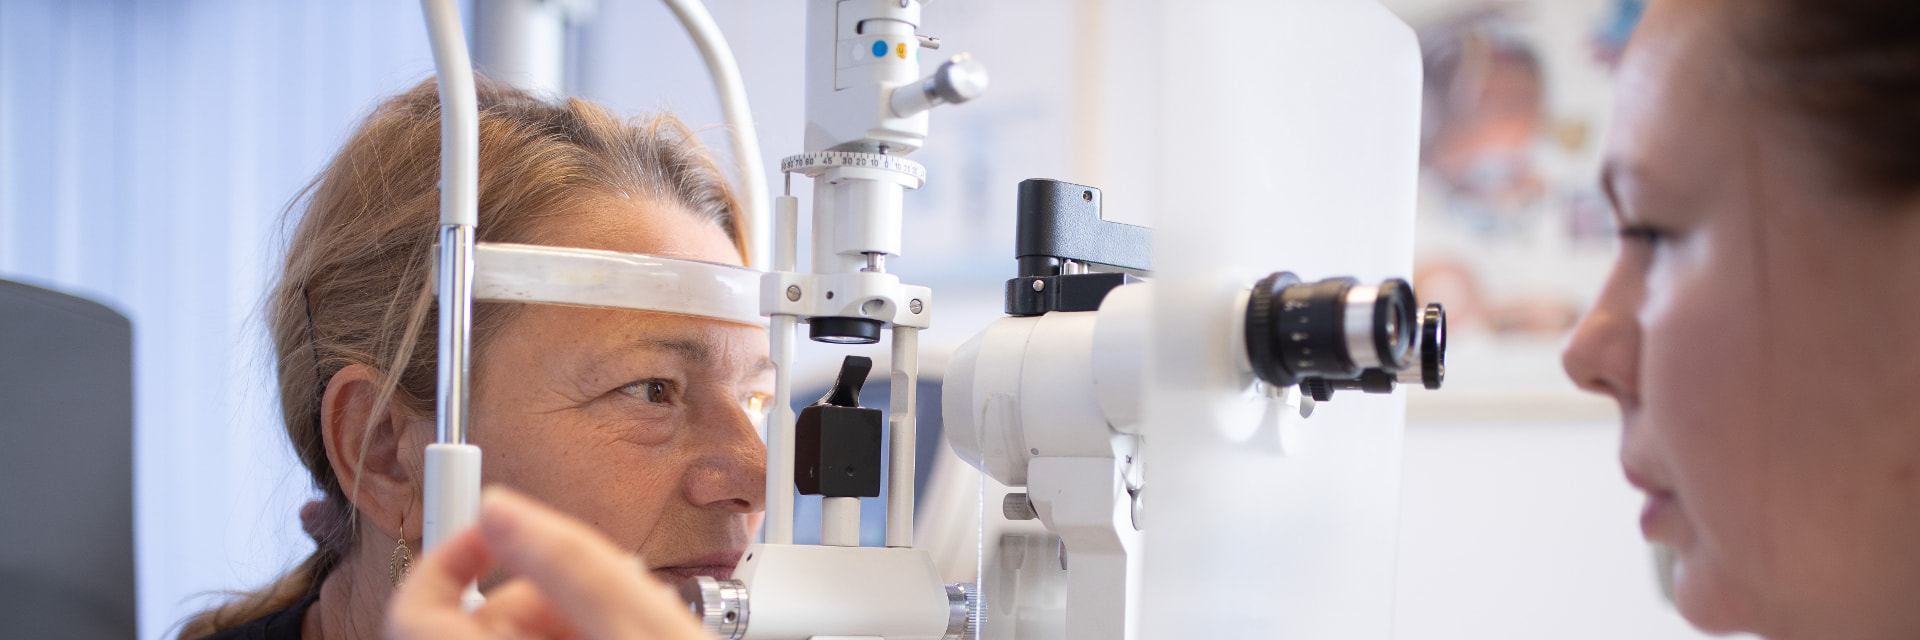 opticas-consultatii-oftalmologice-si-optometrice-medici-specialisti